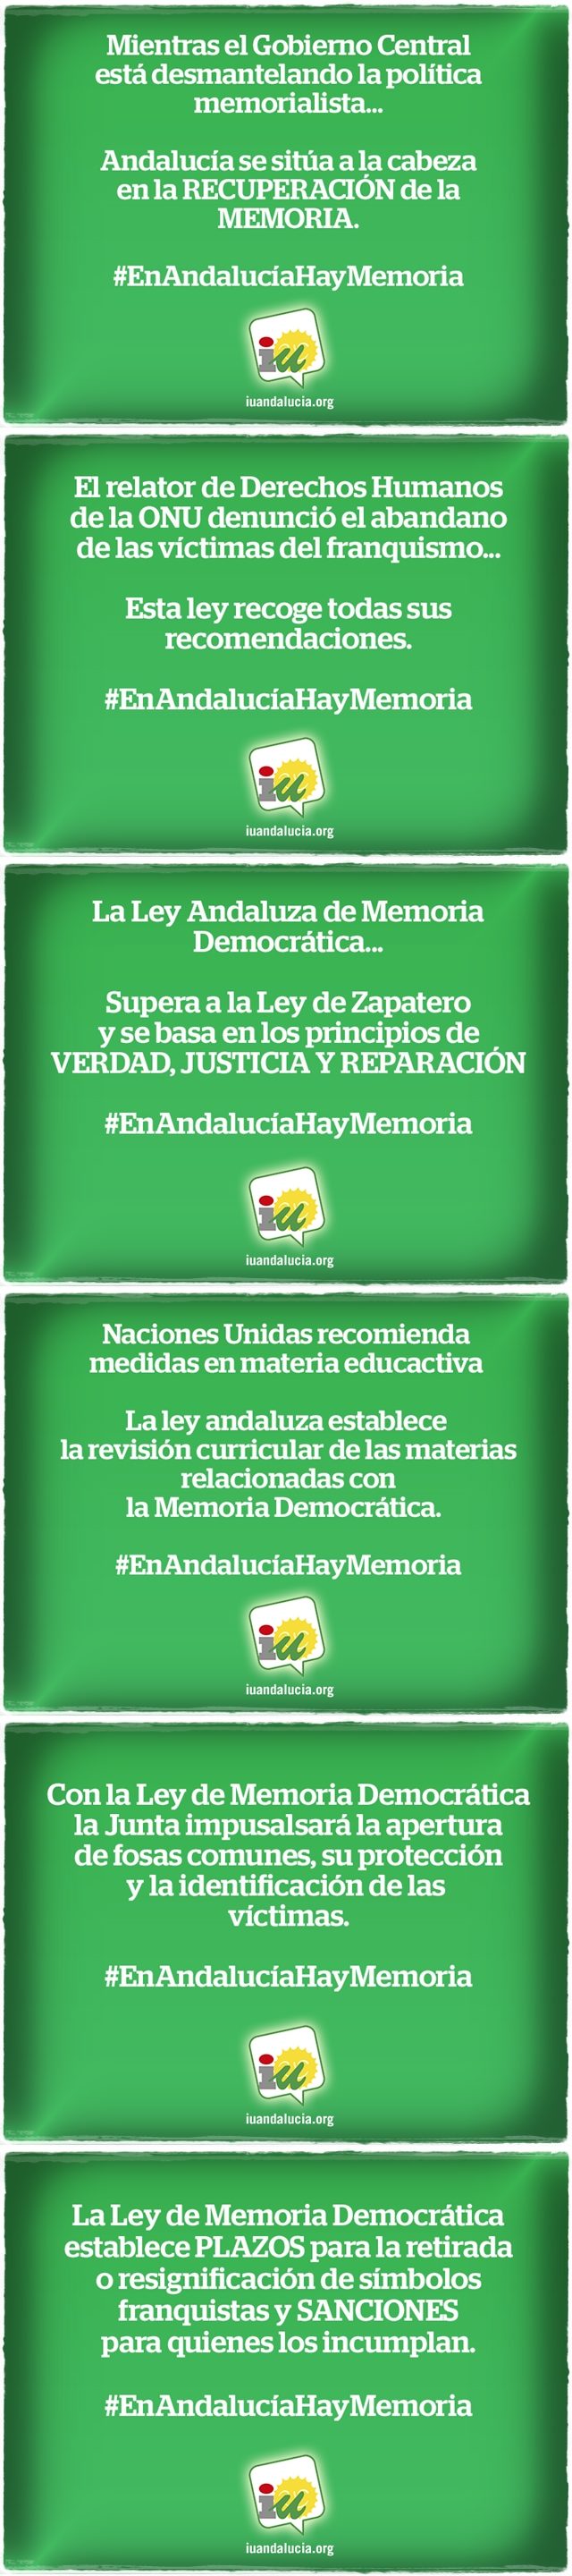 Se ha aprobado el proyecto de Ley de Memoria Democrática de Andalucía